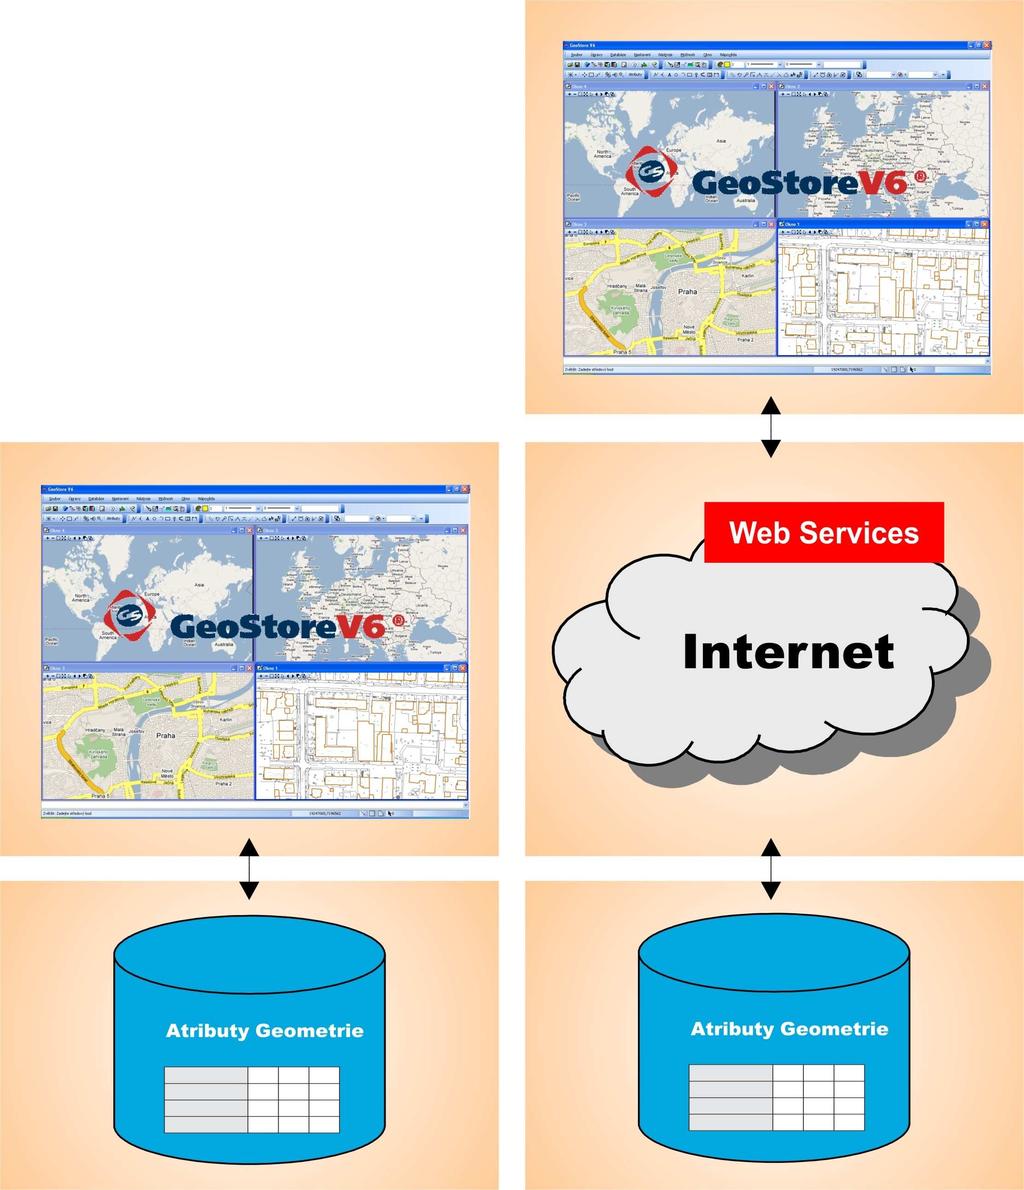 Režimy práce - GeoStore V6 jako klient SQL databáze - GeoStore V6 jako klient aplikačního serveru na bázi Web Services - možnost efektivní aktualizace dat na vzdálených serverech v